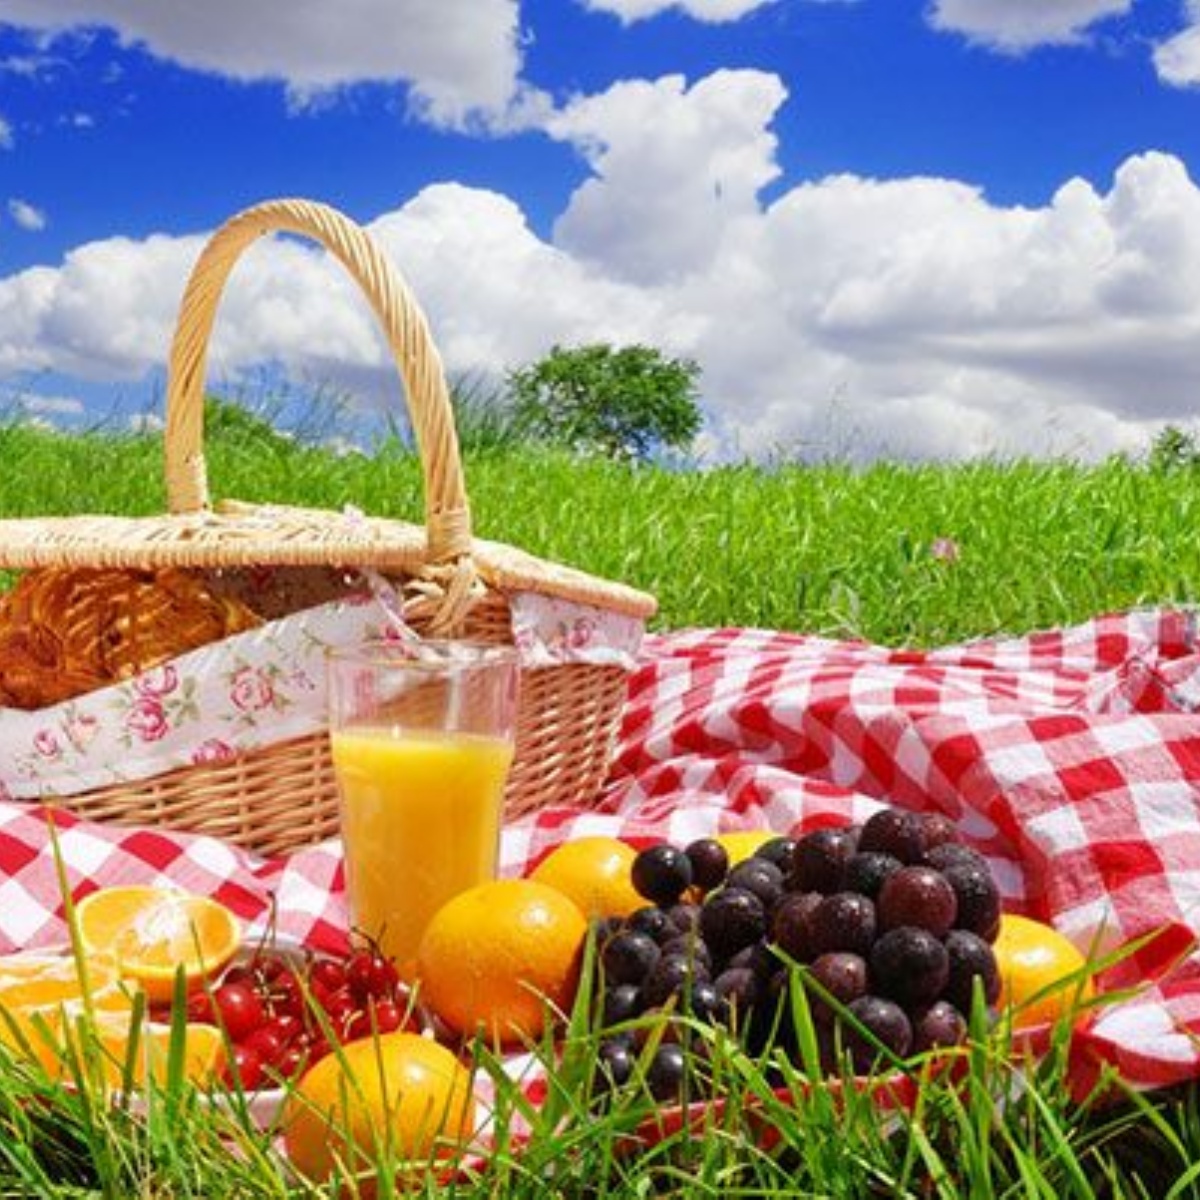 Пикник б. Международный день пикника (International Picnic Day). Еда на природе. Выходные на природе. Летний пикник на природе.